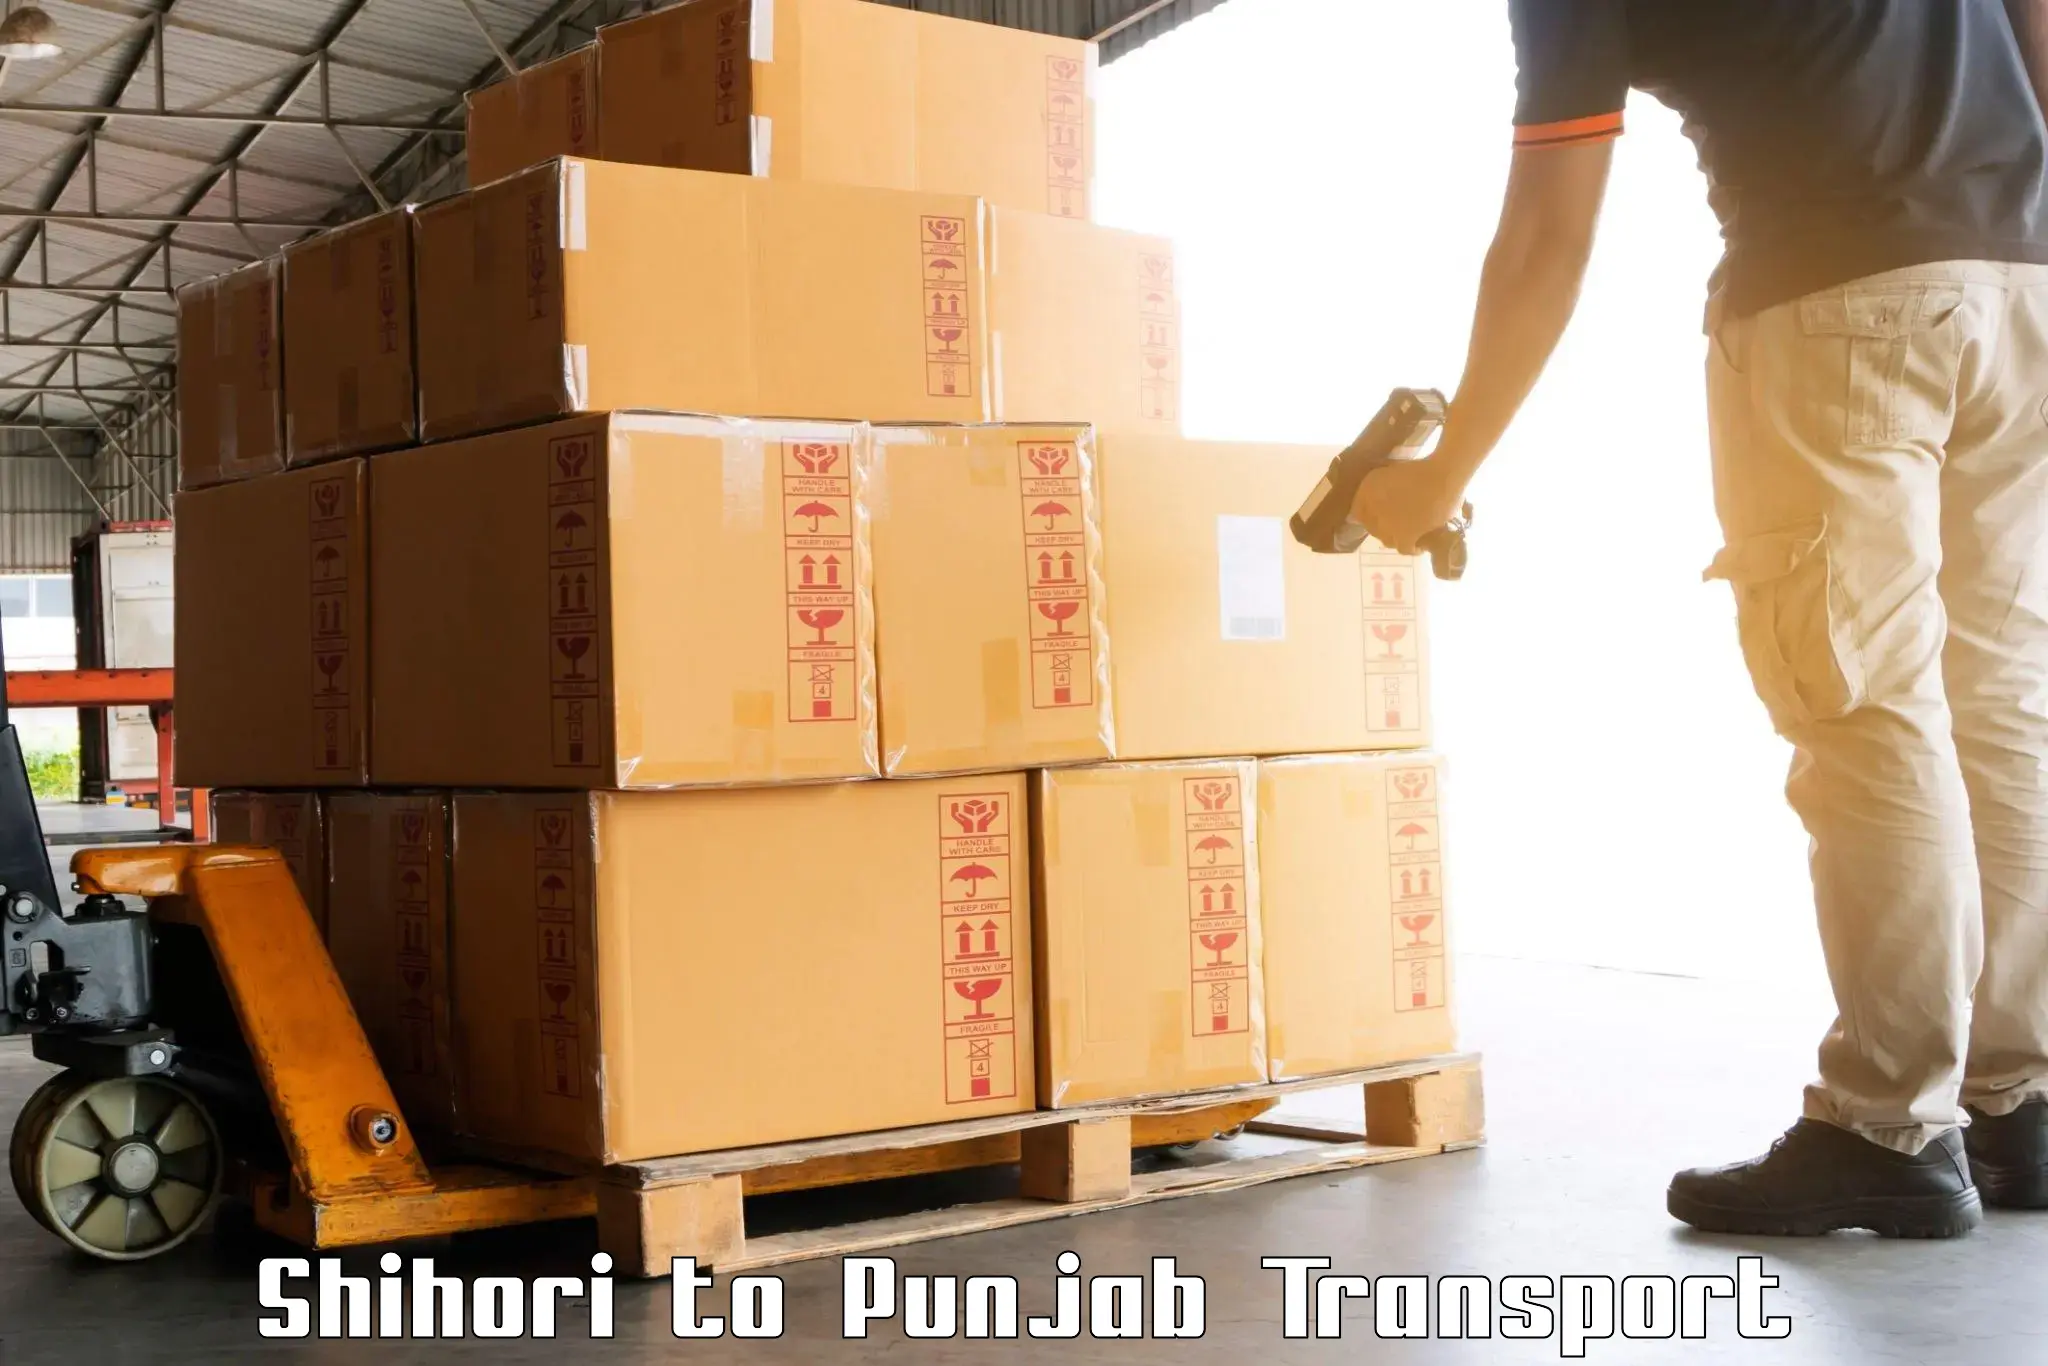 Online transport booking Shihori to Dinanagar